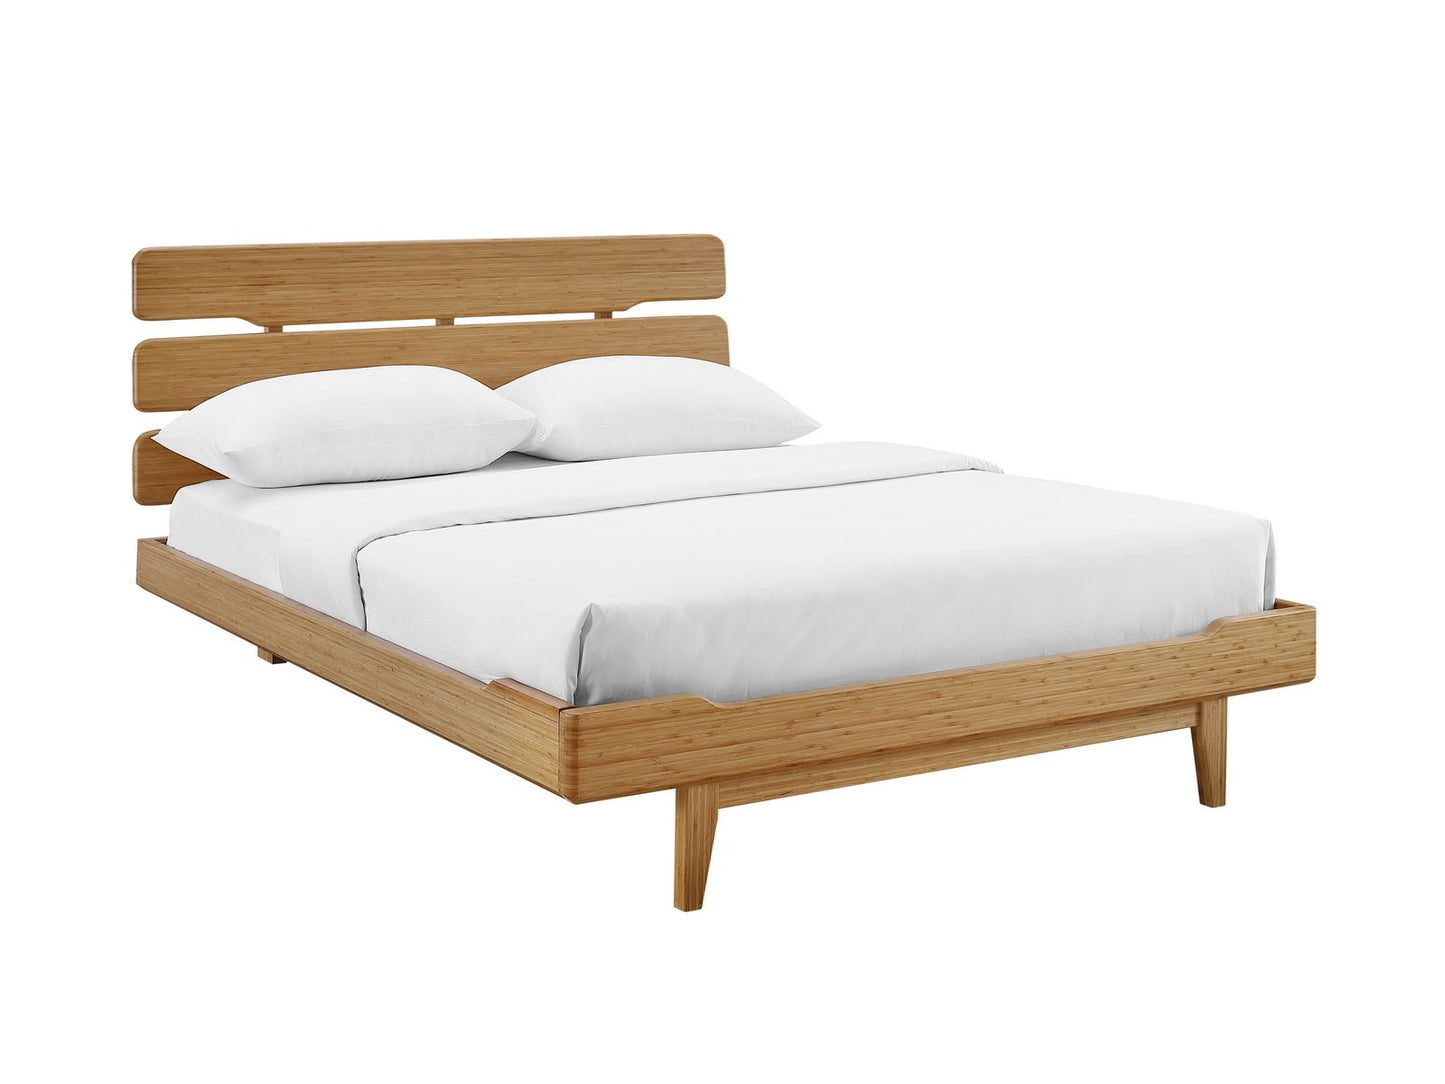 3pc Greenington Currant Modern Queen Platform Bedroom Set (Includes: 1 Queen Bed & 2 Nightstands)